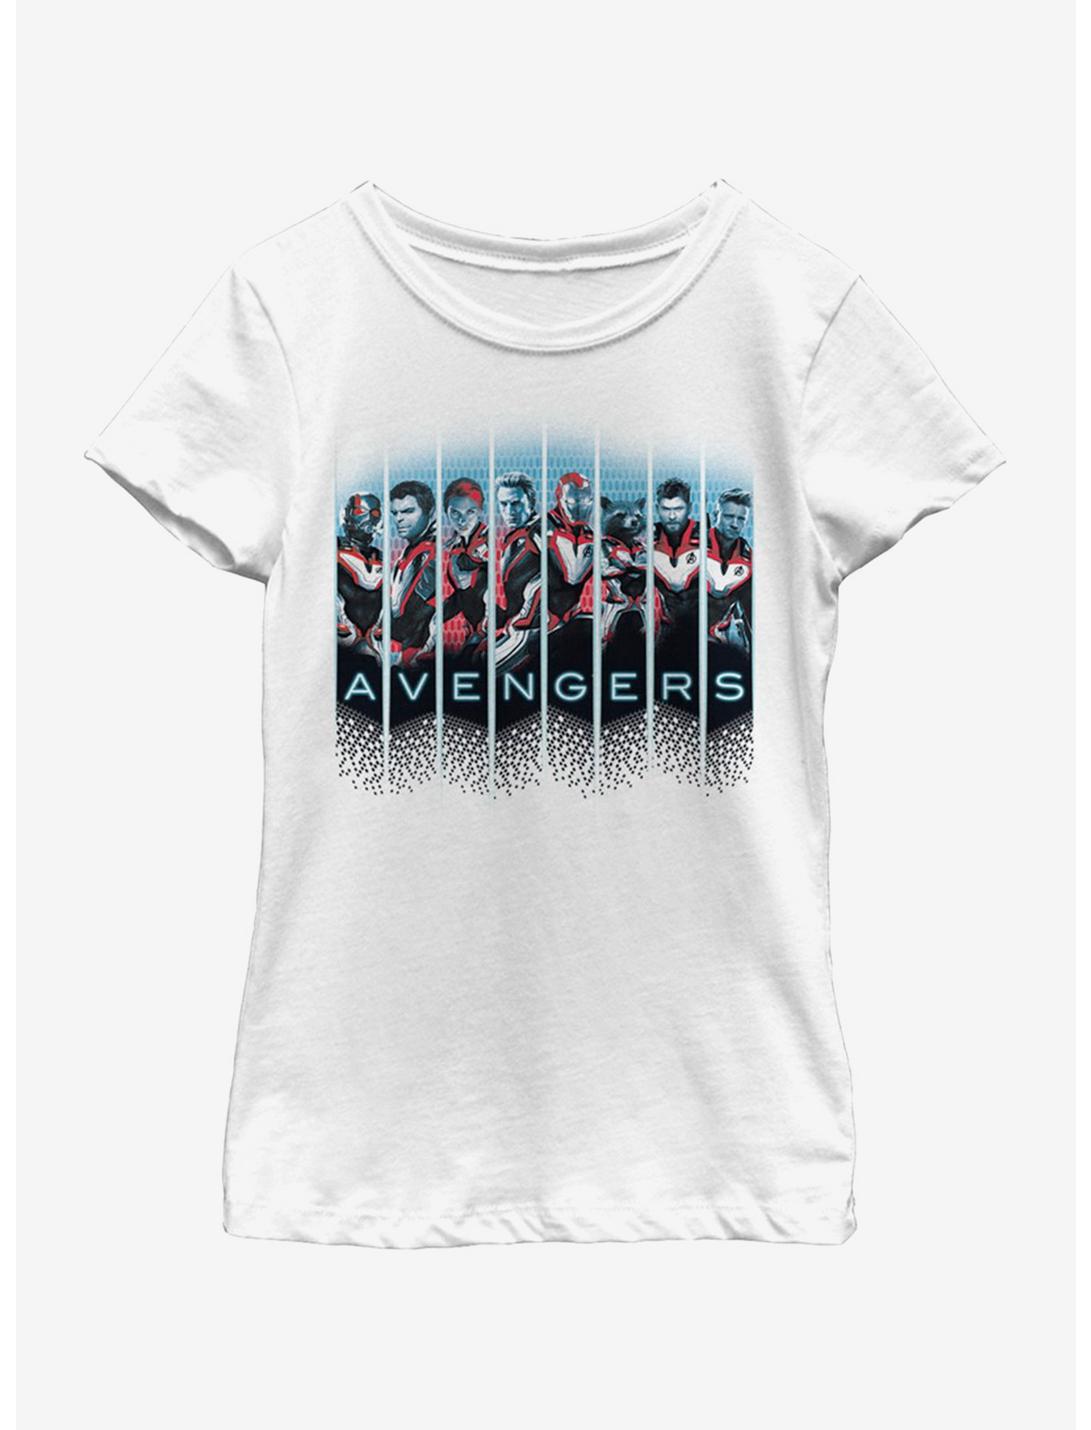 Marvel Avengers: Endgame Grid Panel Youth Girls T-Shirt, WHITE, hi-res